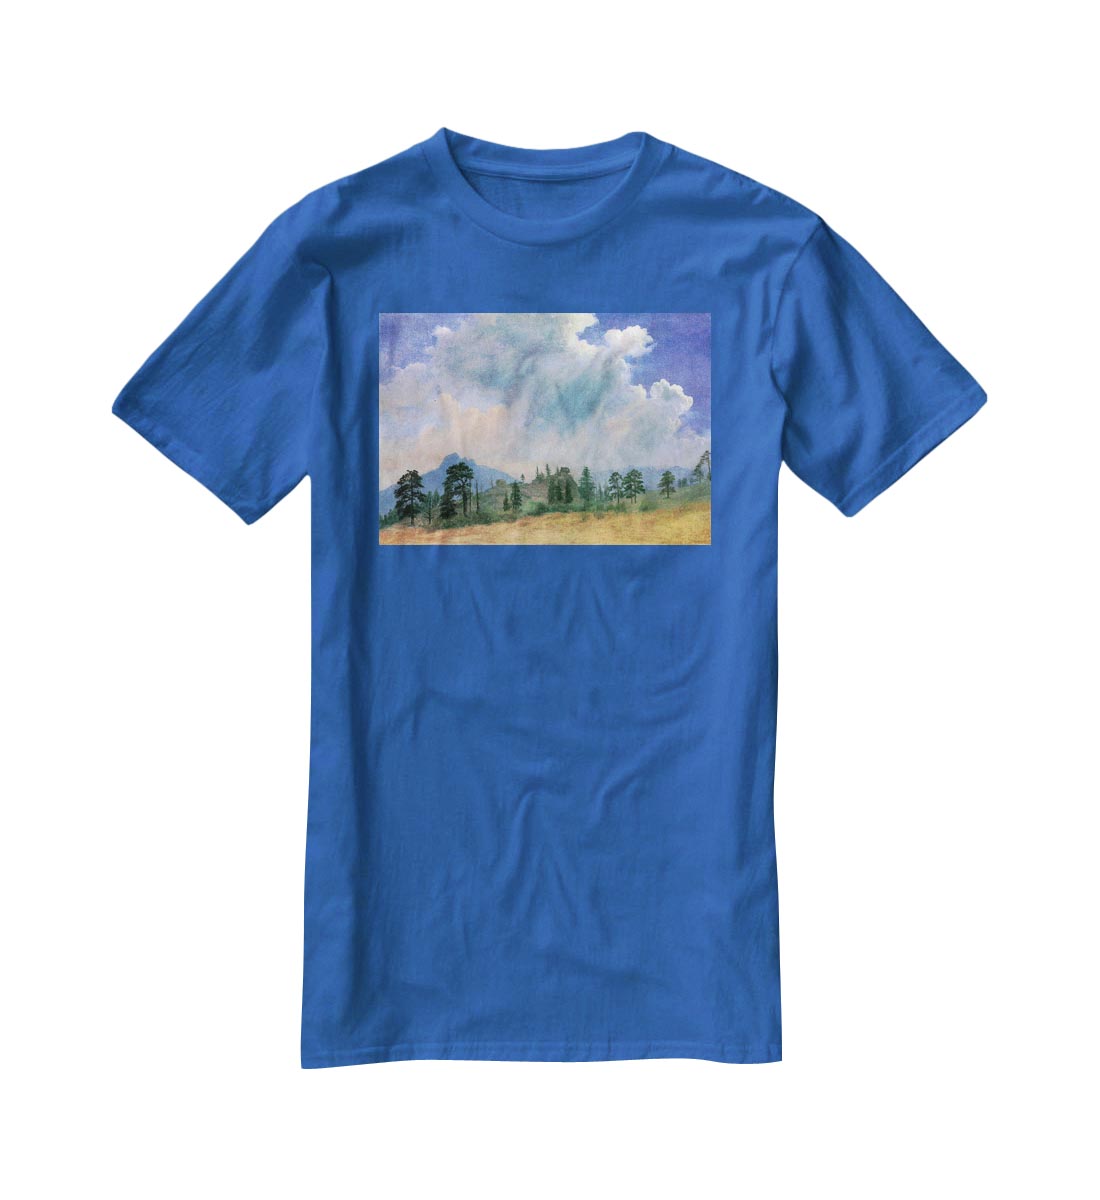 Fir trees and storm clouds by Bierstadt T-Shirt - Canvas Art Rocks - 2